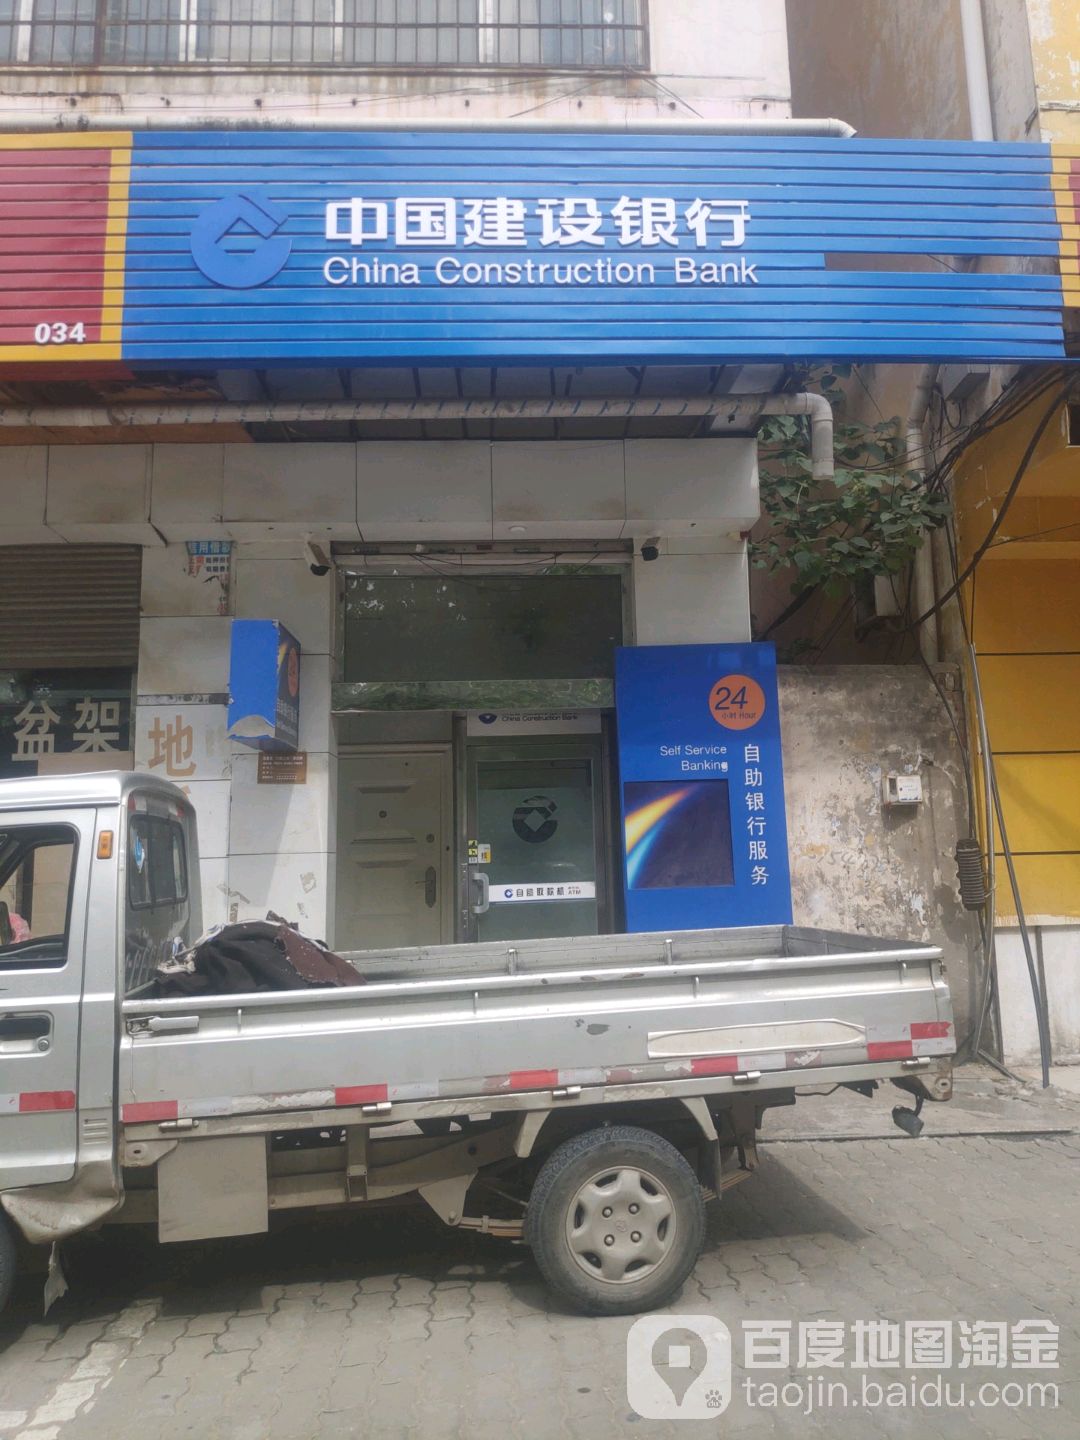 中国建设银行24小时自助银行(人民路店)